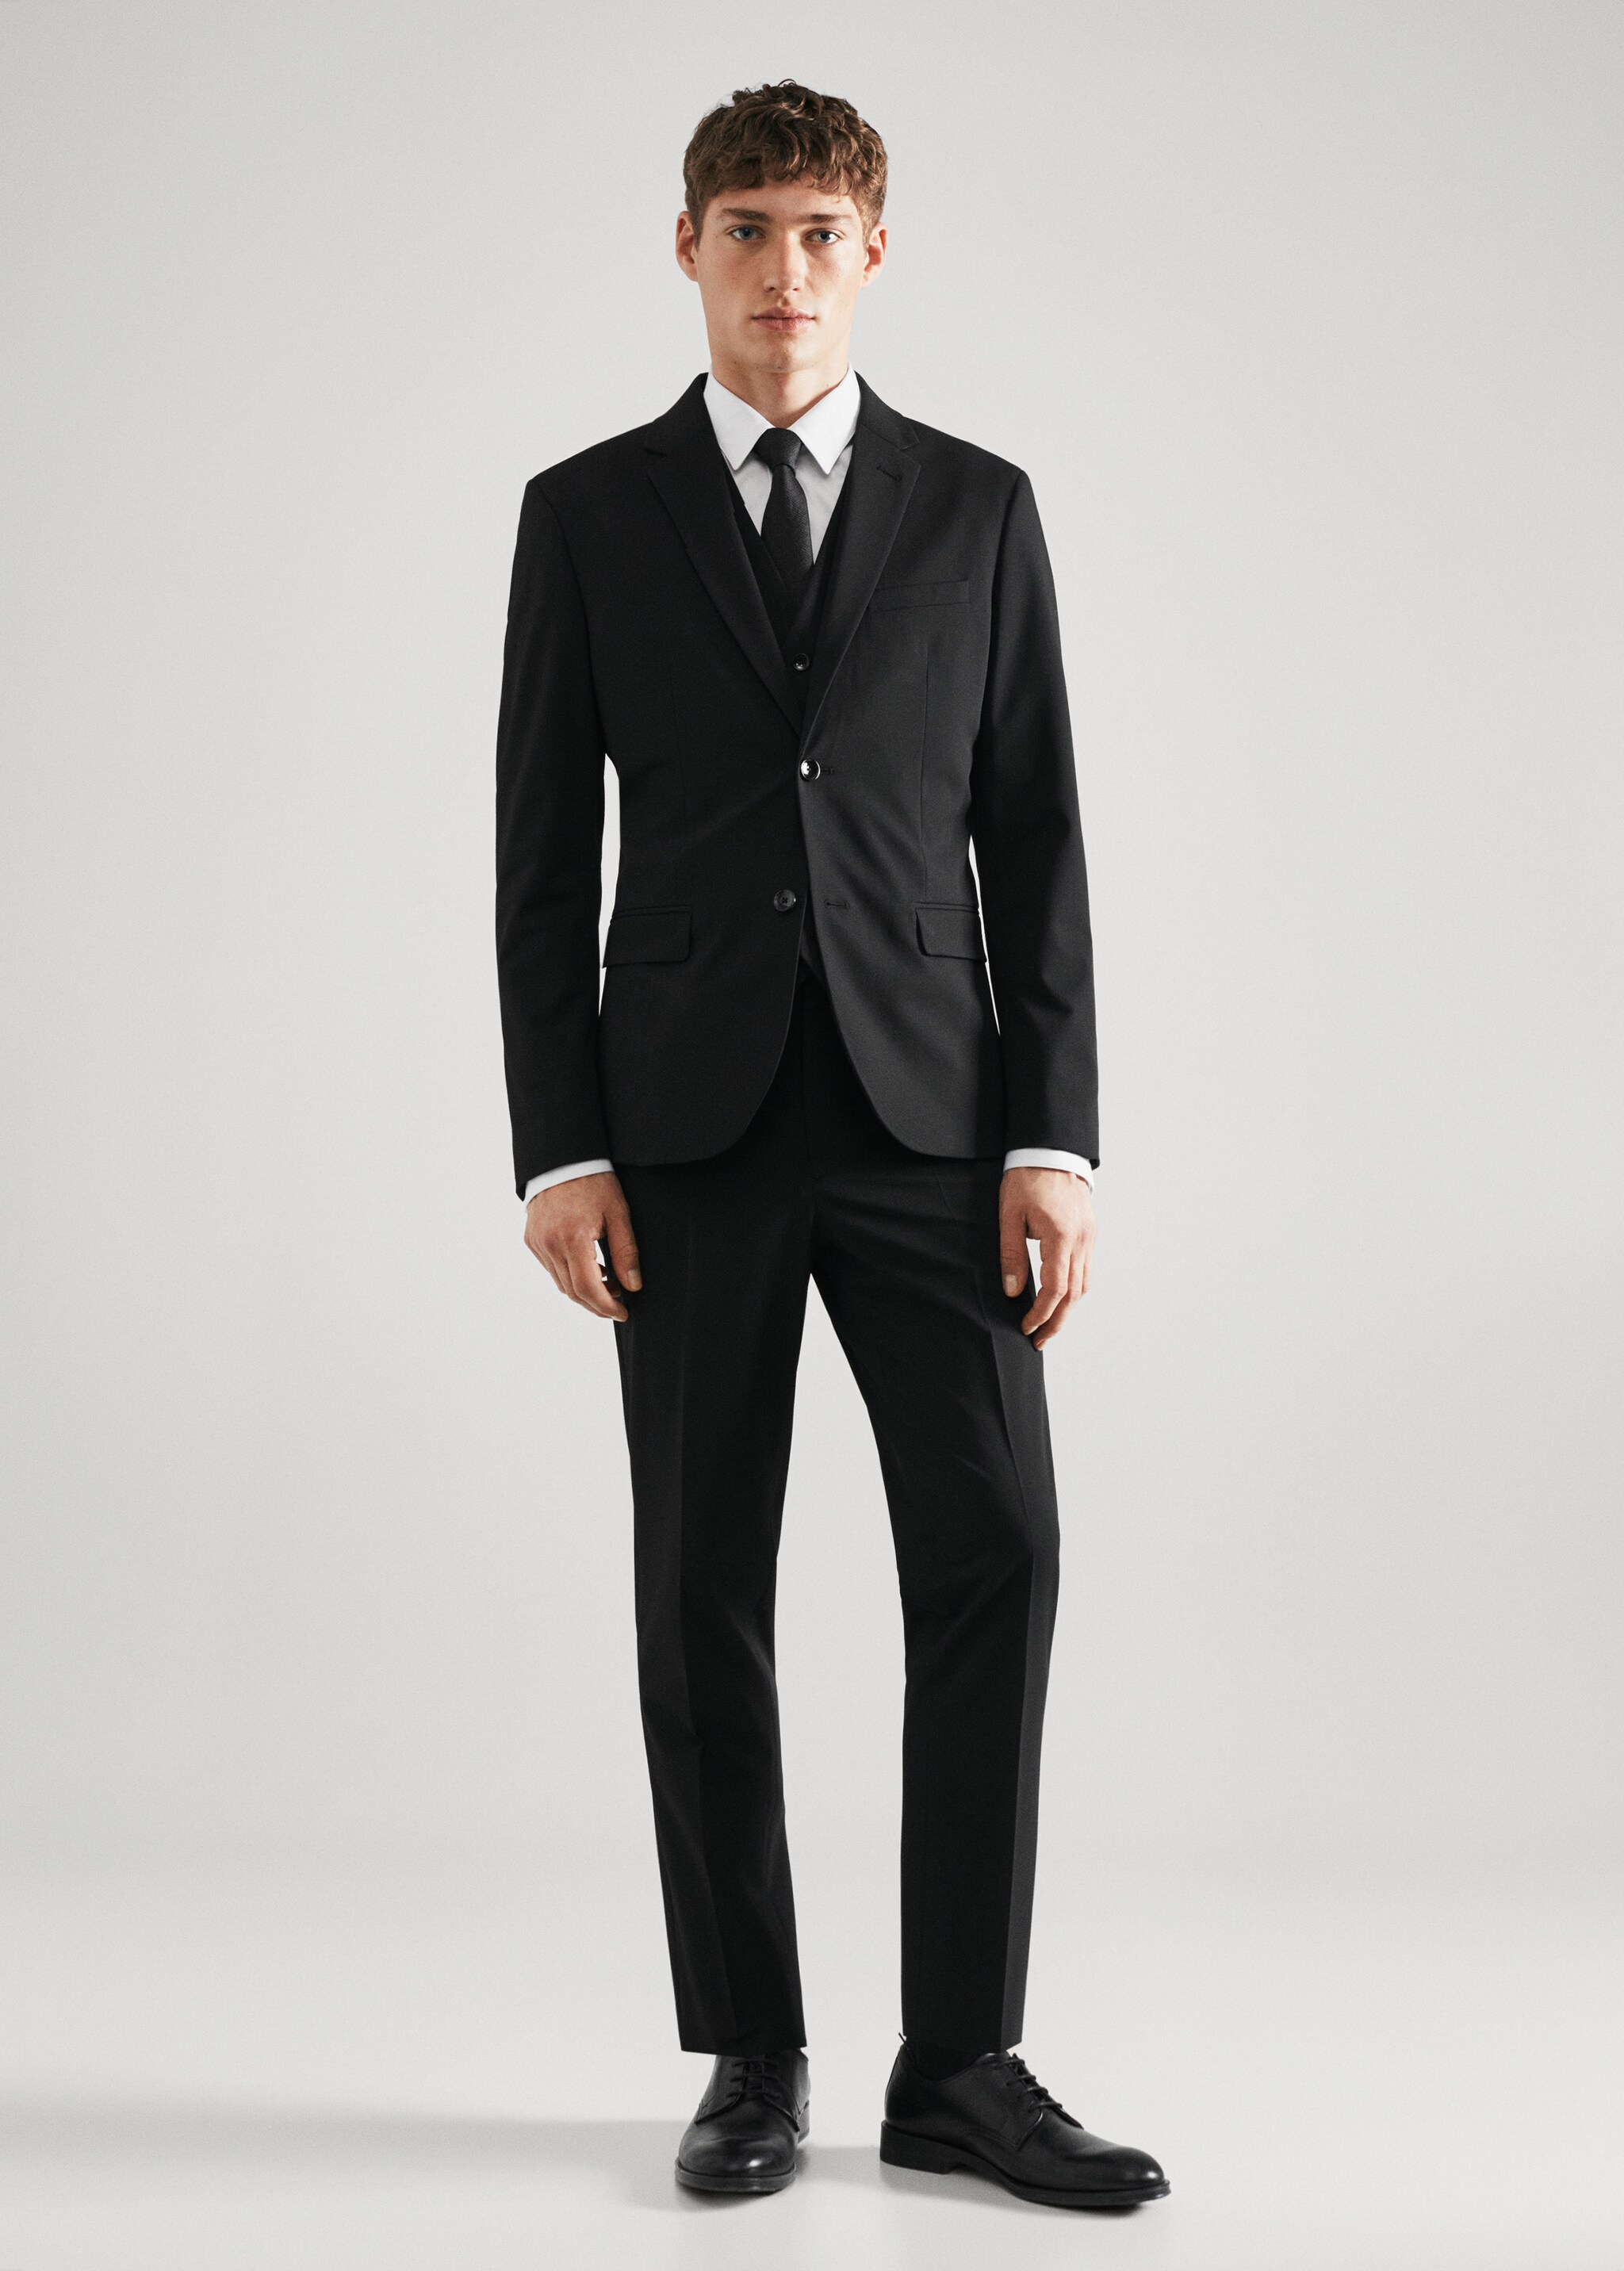 Super slim-fit suit waistcoat - General plane